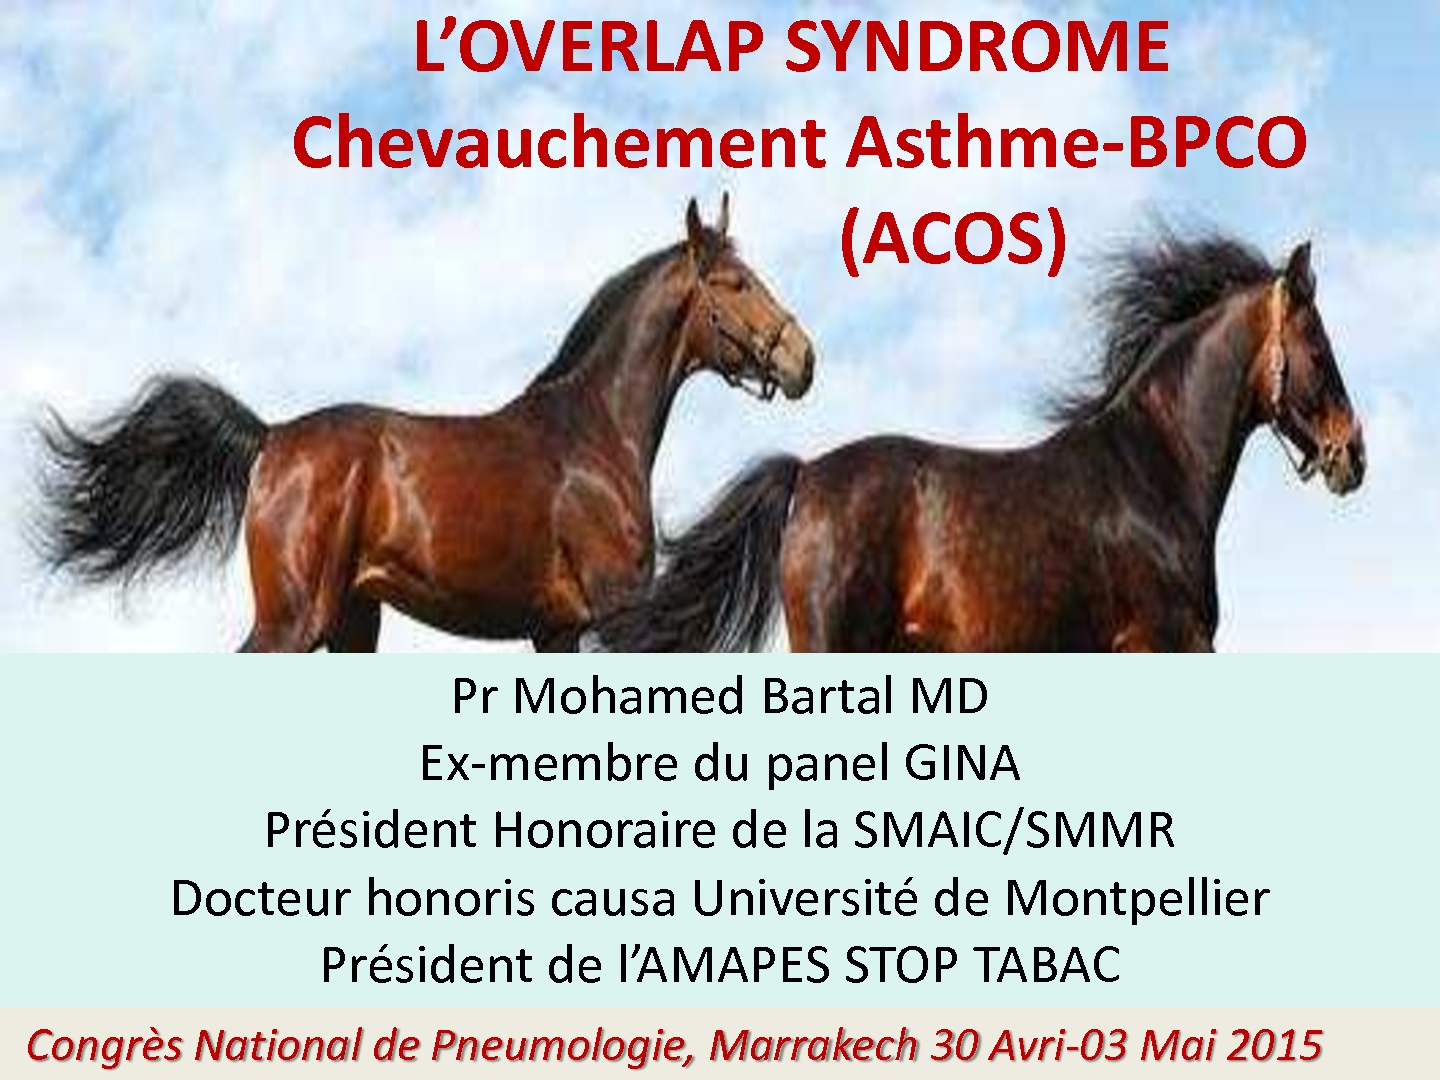 Le syndrome de chevauchement Asthme-BPCO. M. BARTAL